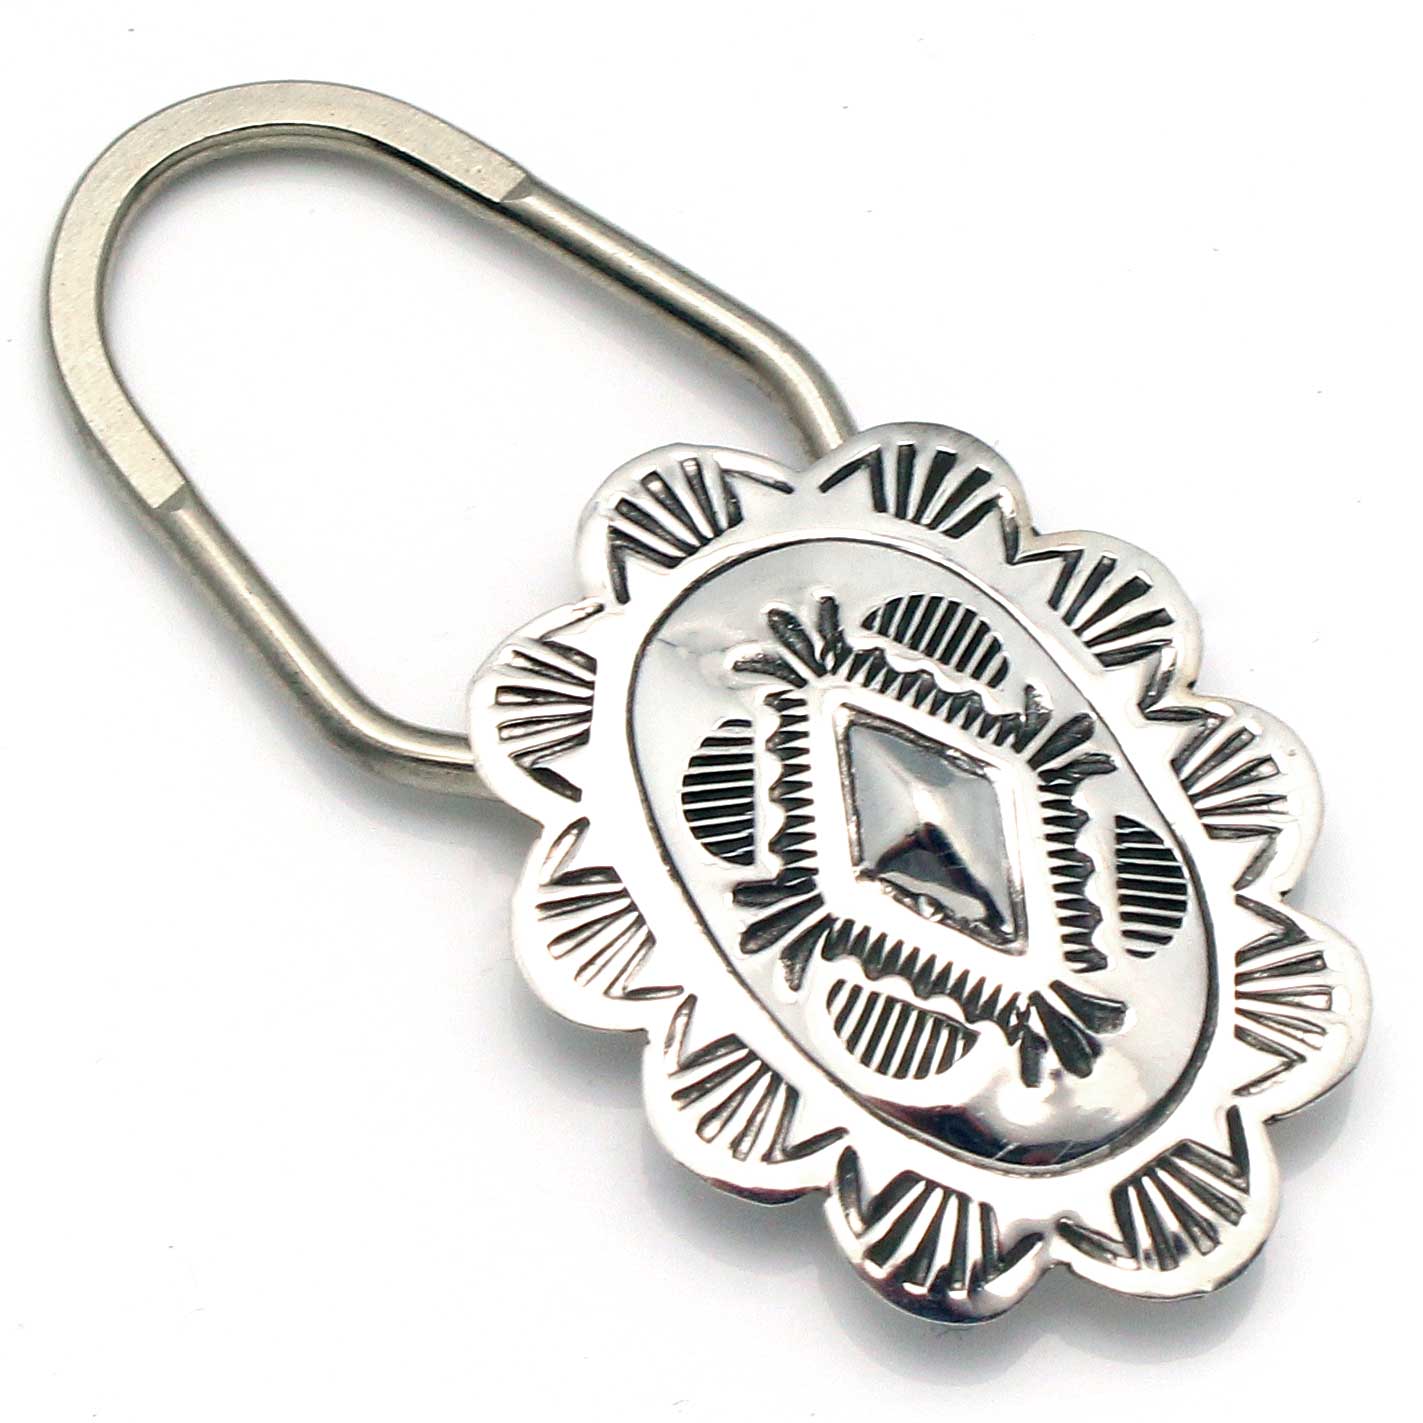 Sterling Silver Key Rings